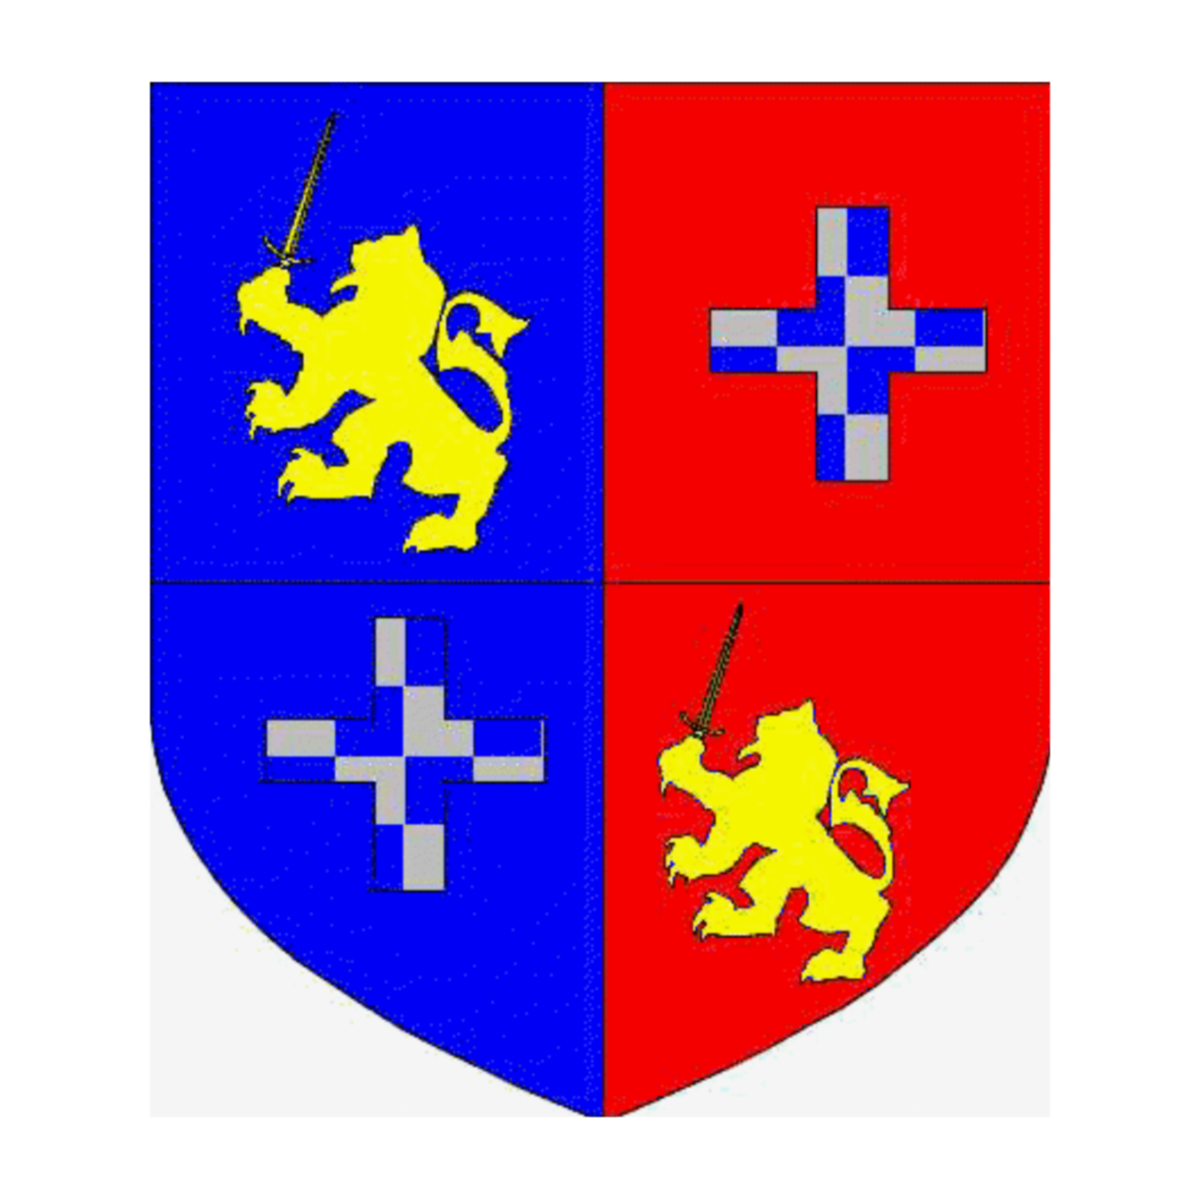 Wappen der Familie Vaquero